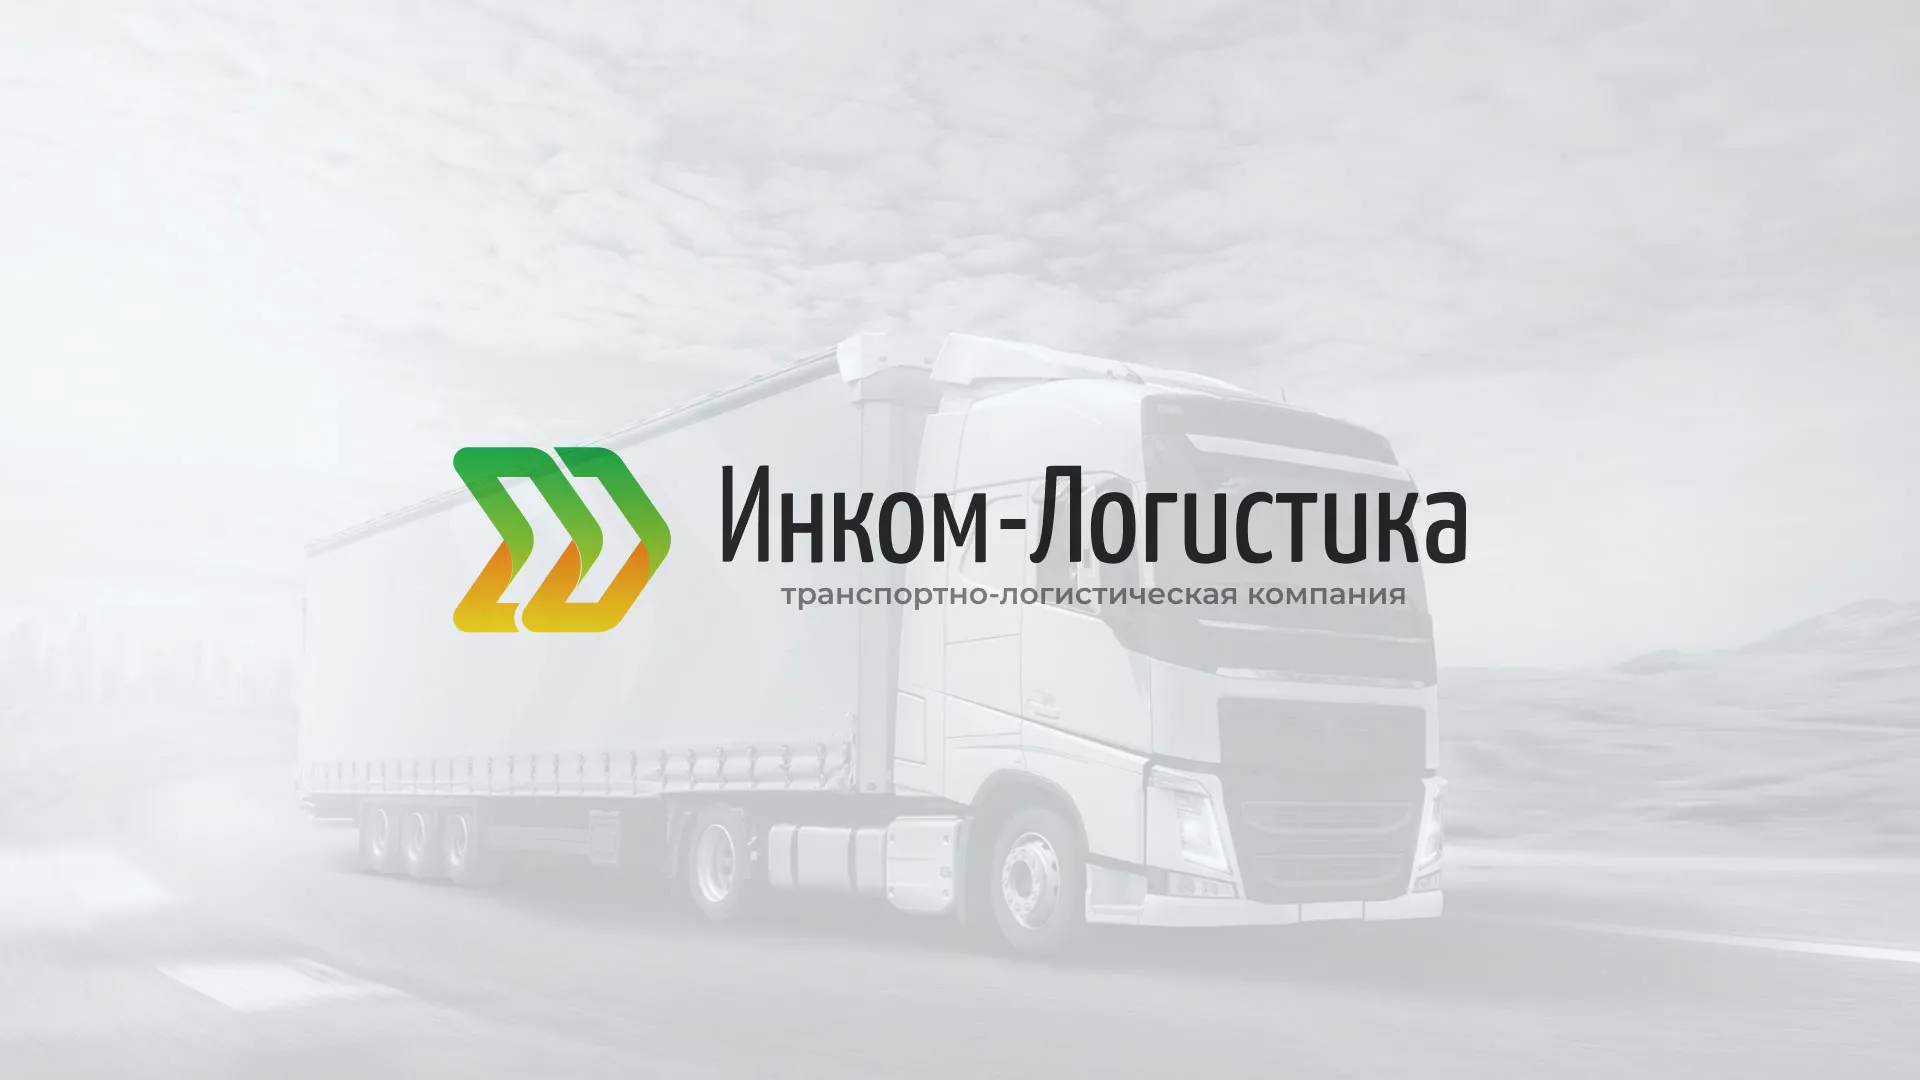 Разработка логотипа и сайта компании «Инком-Логистика» в Оренбурге